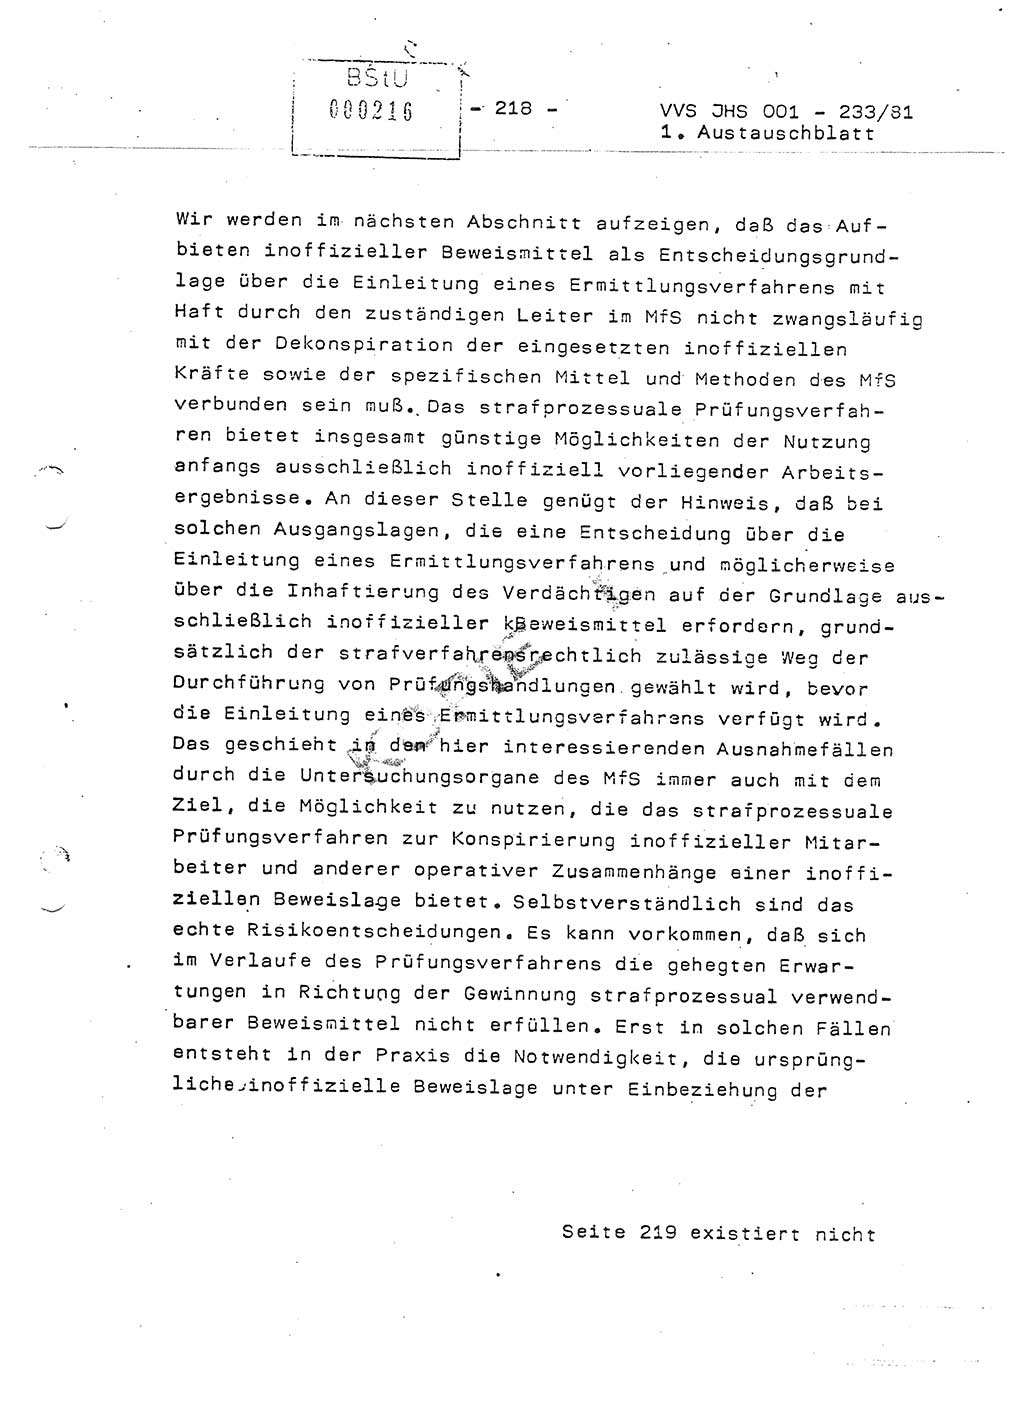 Dissertation Oberstleutnant Horst Zank (JHS), Oberstleutnant Dr. Karl-Heinz Knoblauch (JHS), Oberstleutnant Gustav-Adolf Kowalewski (HA Ⅸ), Oberstleutnant Wolfgang Plötner (HA Ⅸ), Ministerium für Staatssicherheit (MfS) [Deutsche Demokratische Republik (DDR)], Juristische Hochschule (JHS), Vertrauliche Verschlußsache (VVS) o001-233/81, Potsdam 1981, Blatt 218 (Diss. MfS DDR JHS VVS o001-233/81 1981, Bl. 218)